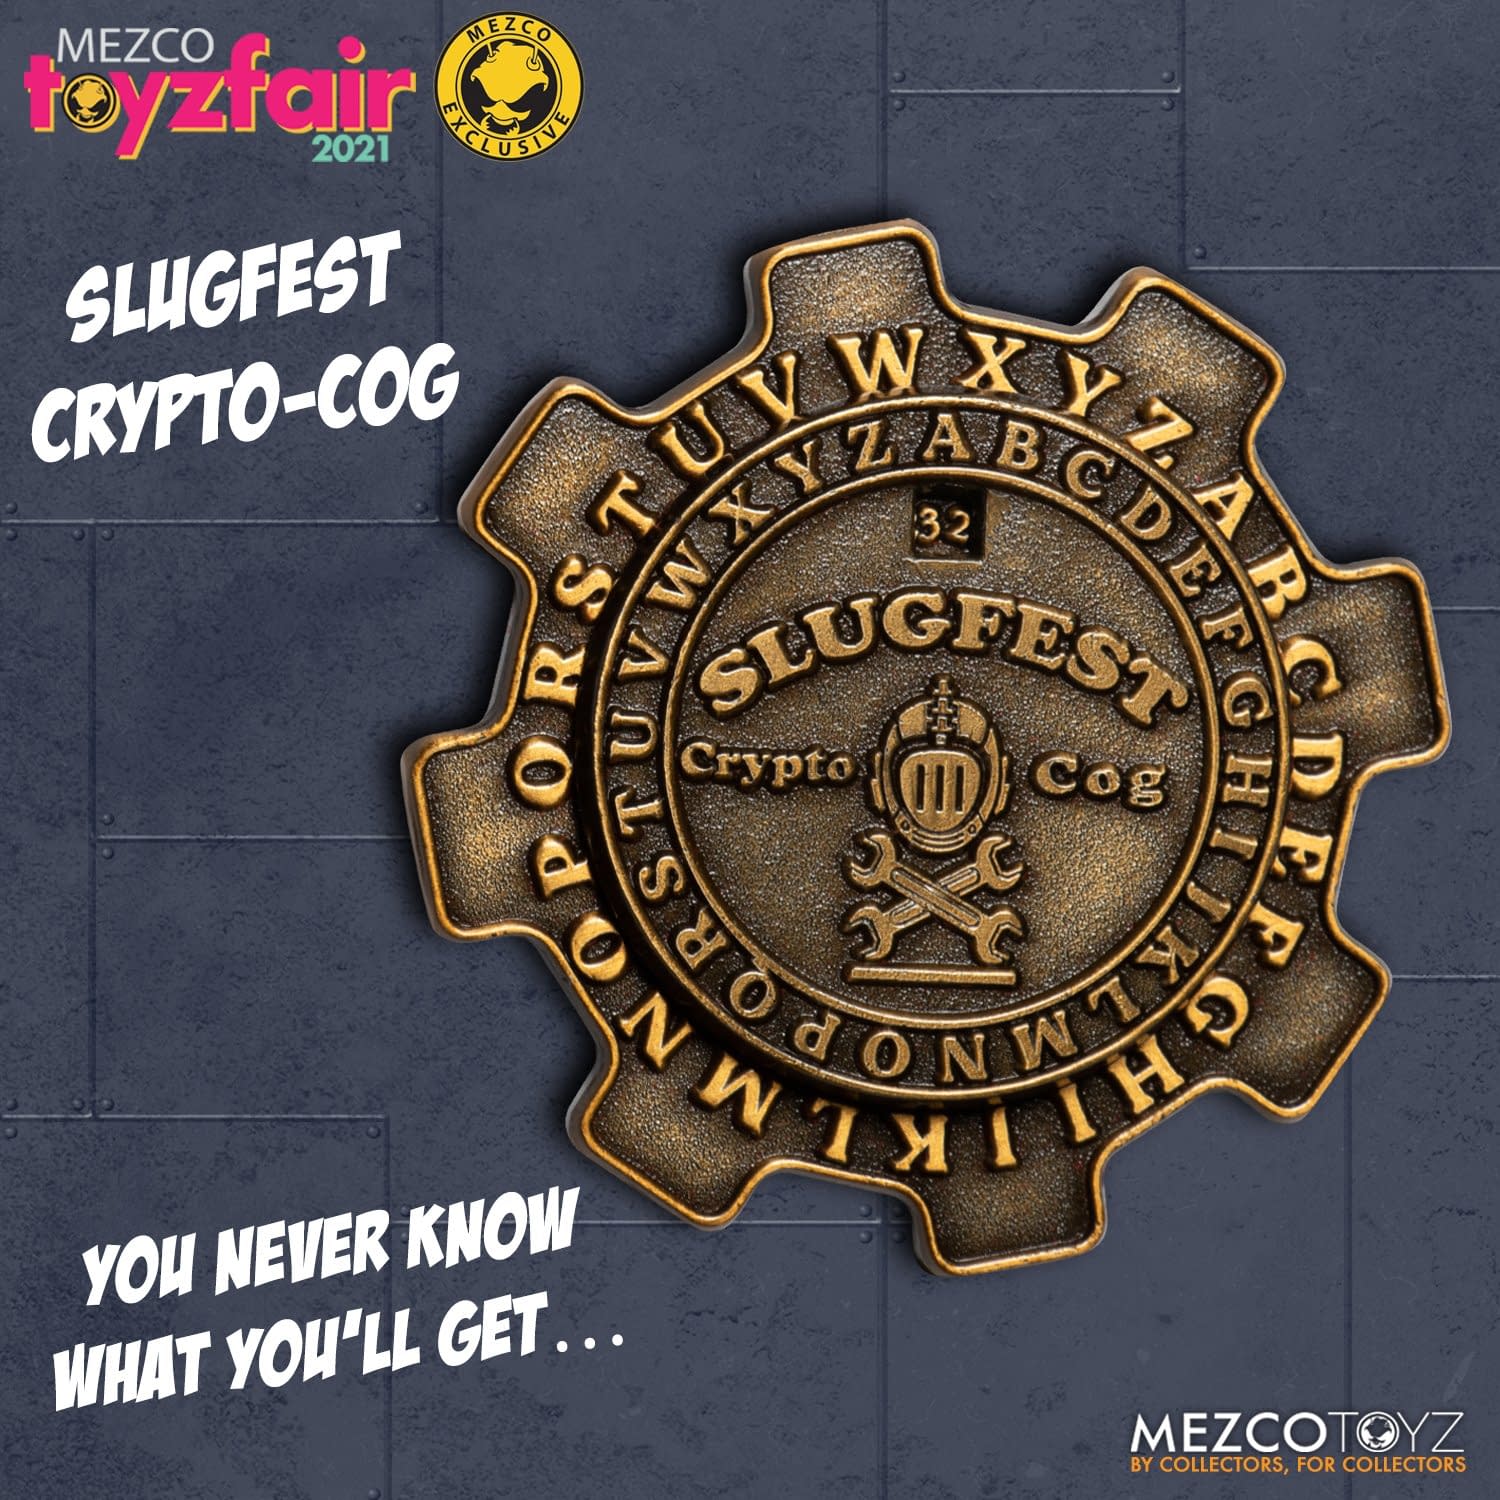 Mezco Toyz Fair 2021: Exclusive Toyz Chest